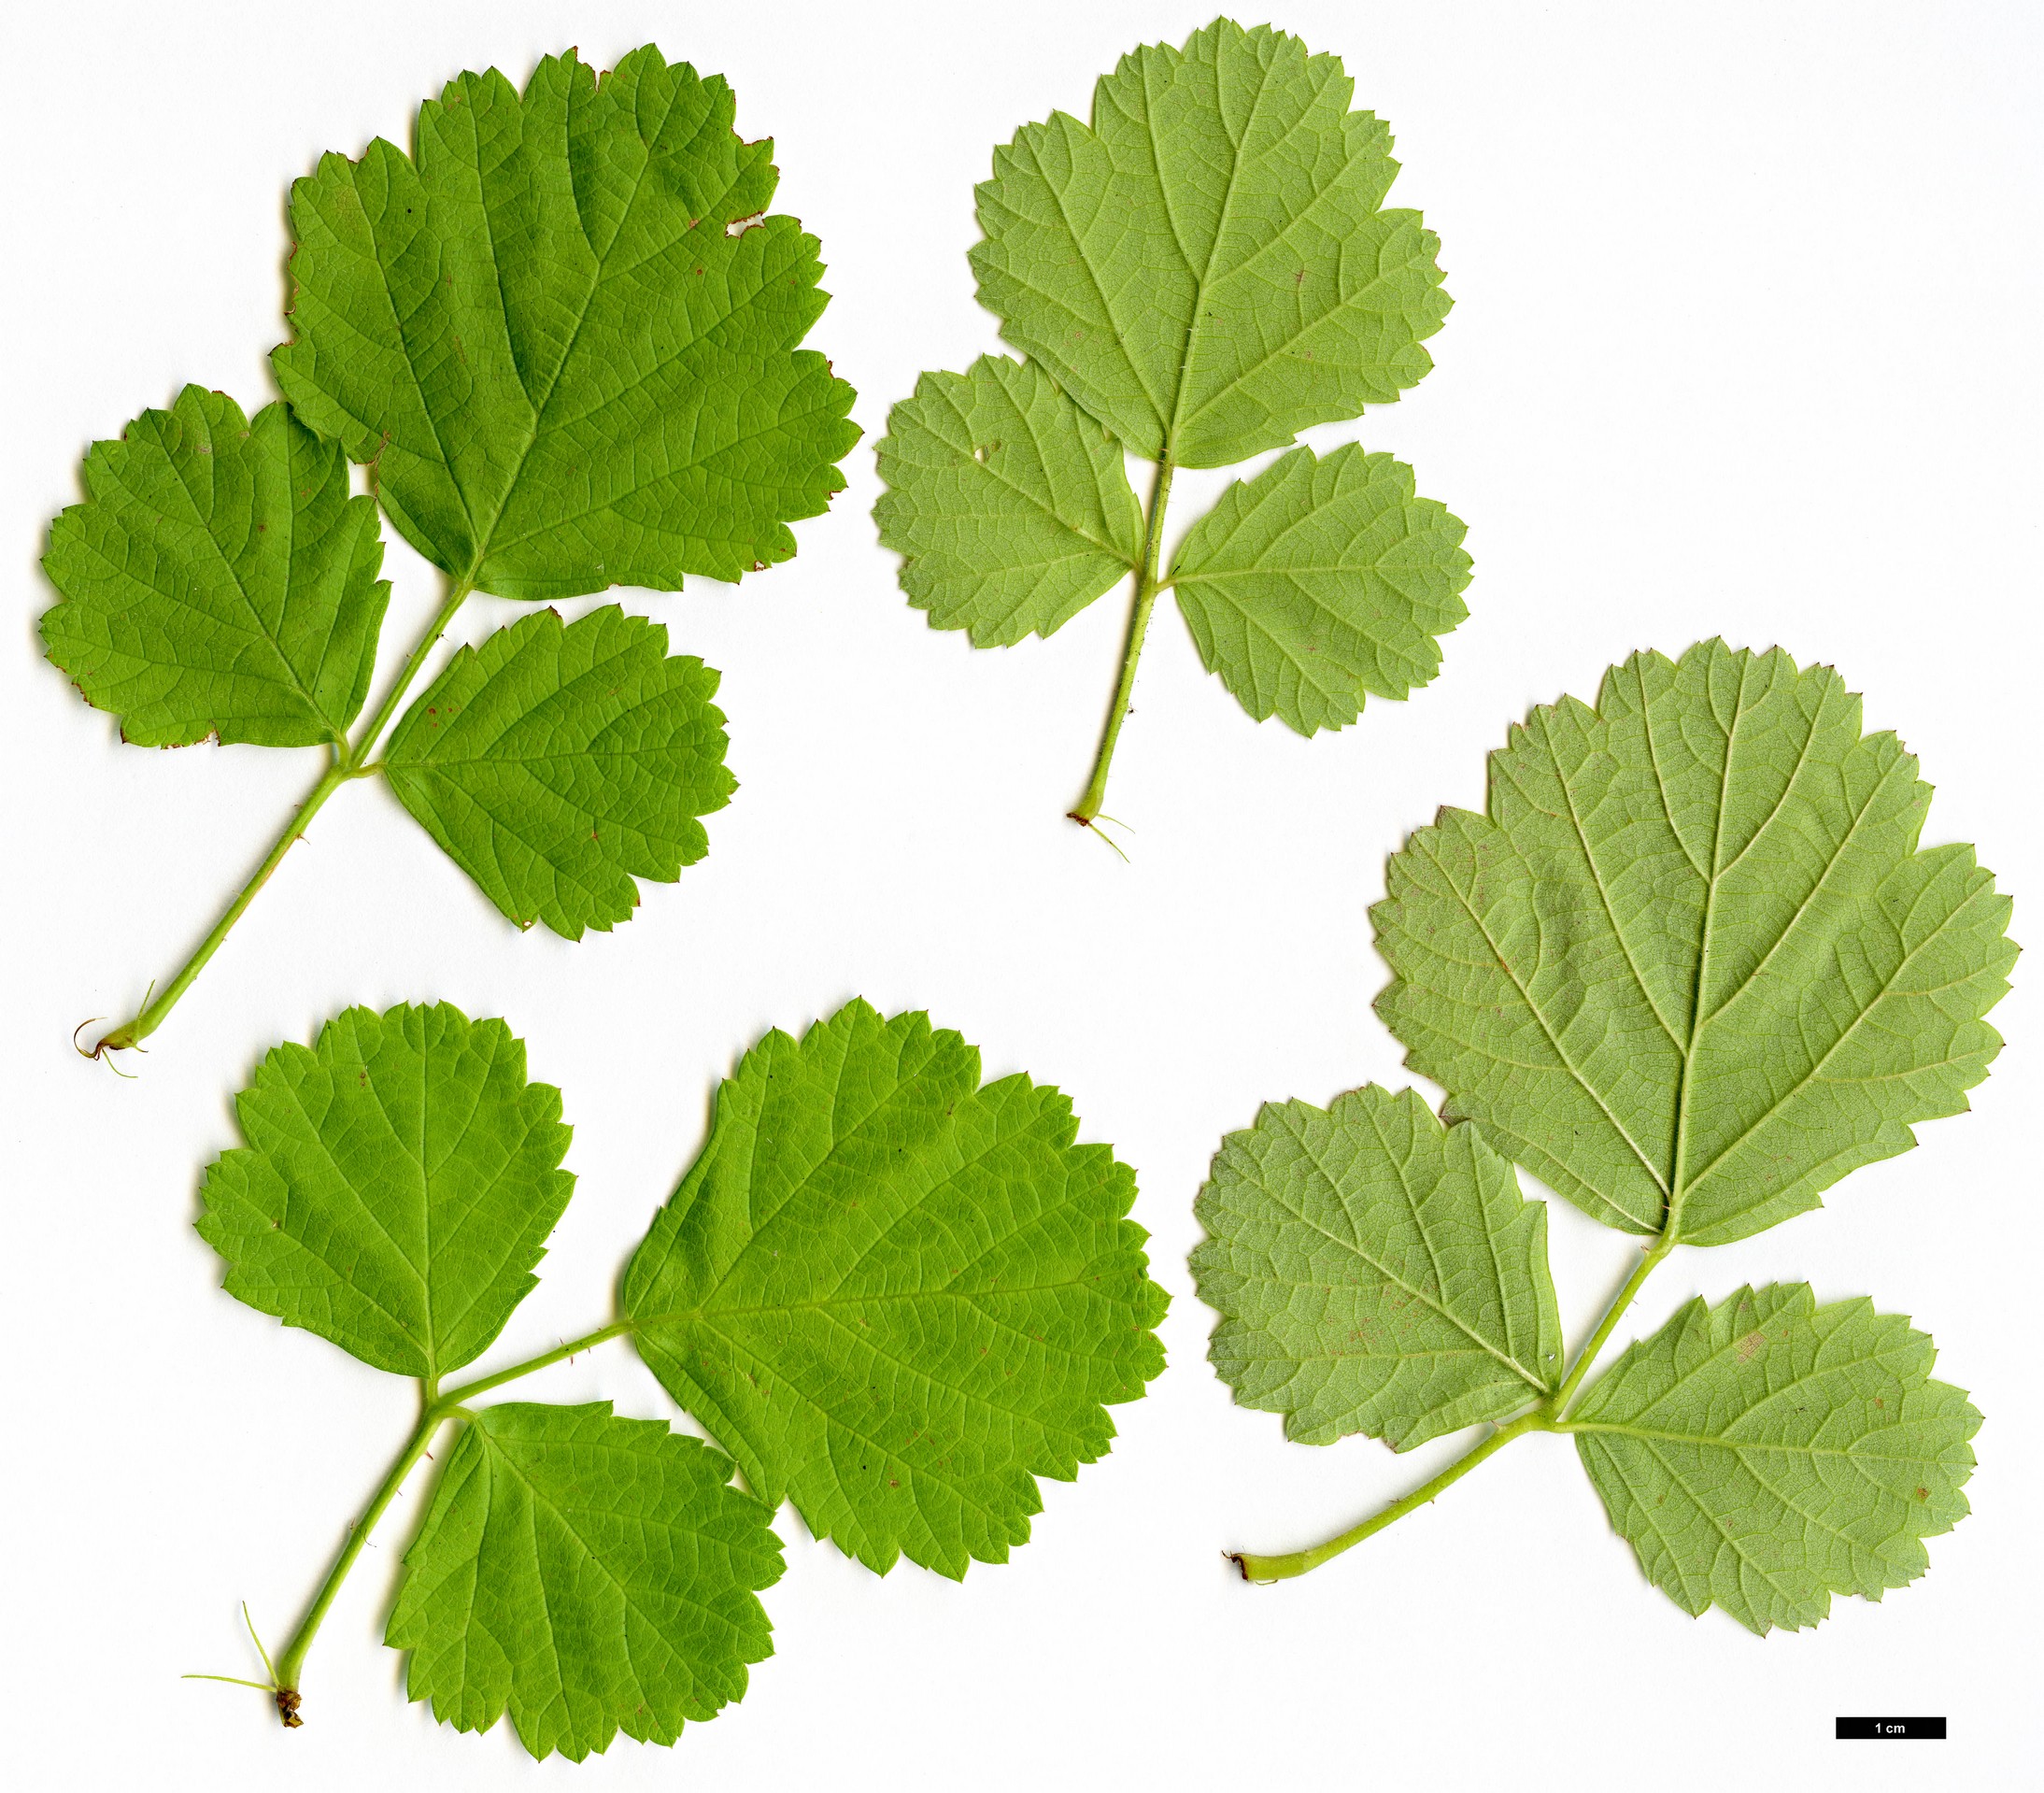 High resolution image: Family: Rosaceae - Genus: Rubus - Taxon: parvifolius - SpeciesSub: ‘Ogon’